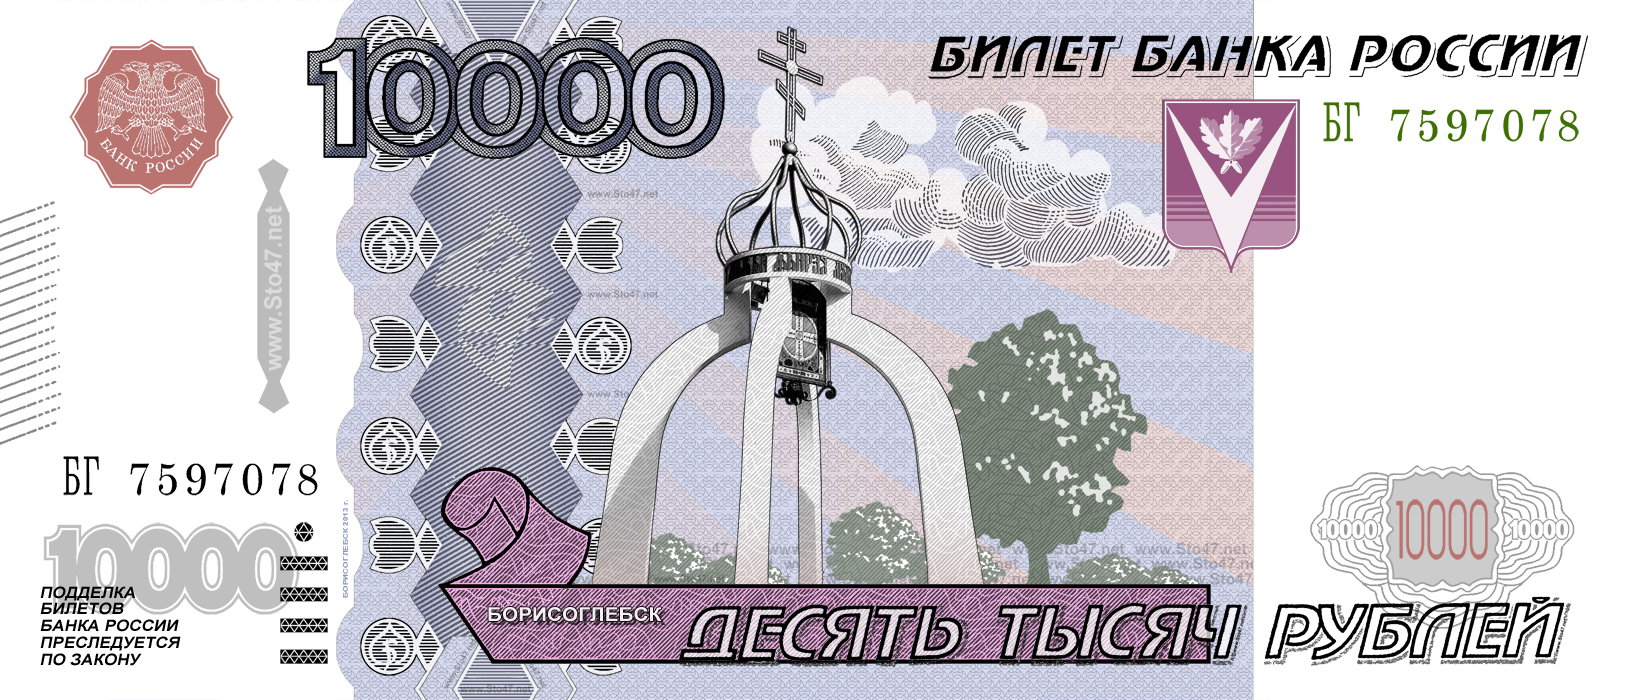 10 000 1000. 10000 Рублей. Купюра 10000 рублей. 10 000 Рублей купюра. 10 Тысяч рублей купюра.